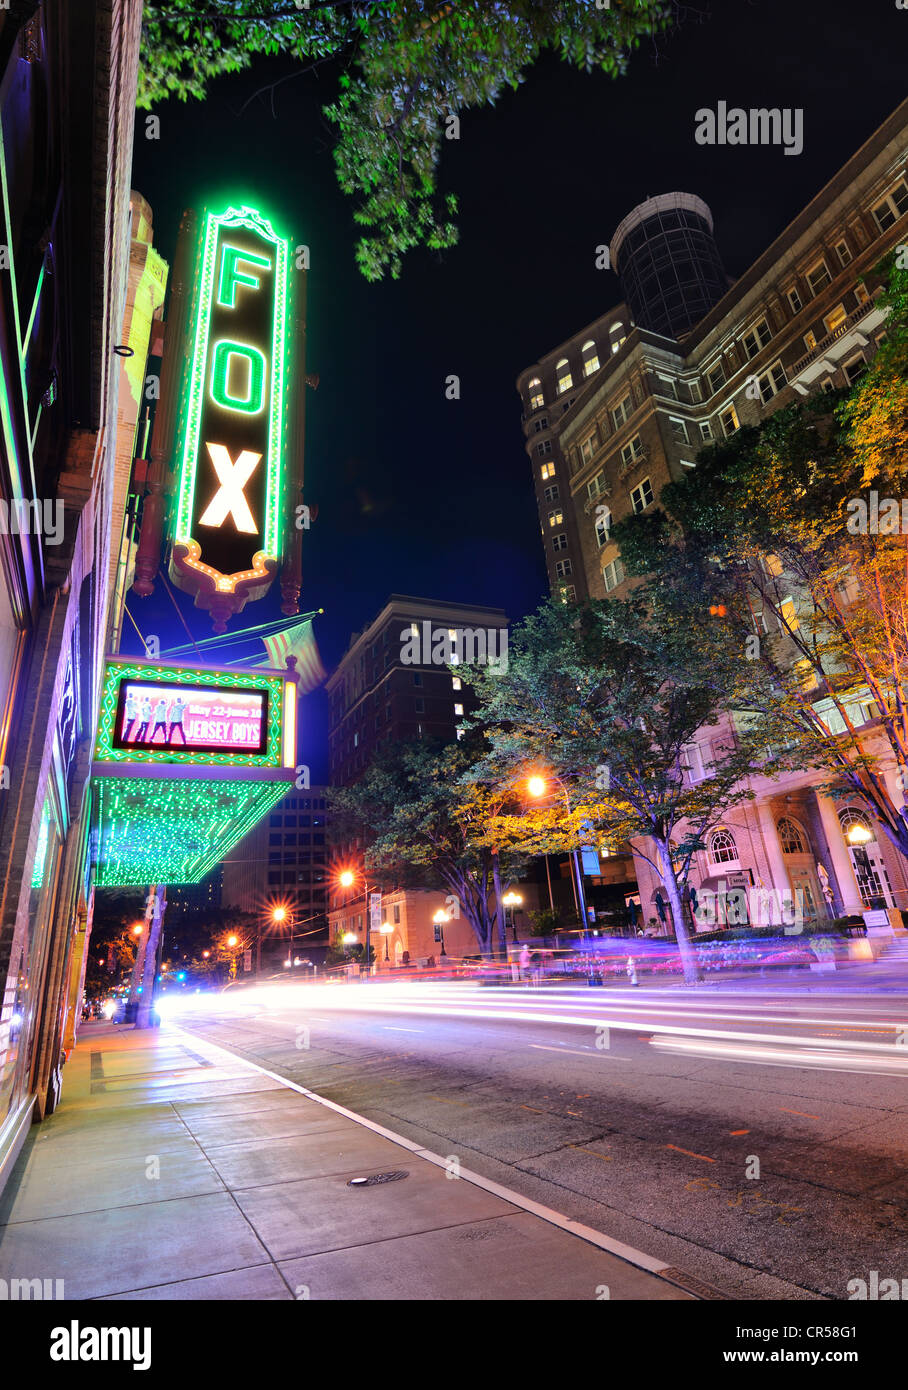 The Fox Theatre in Atlanta, Georgia. Stock Photo